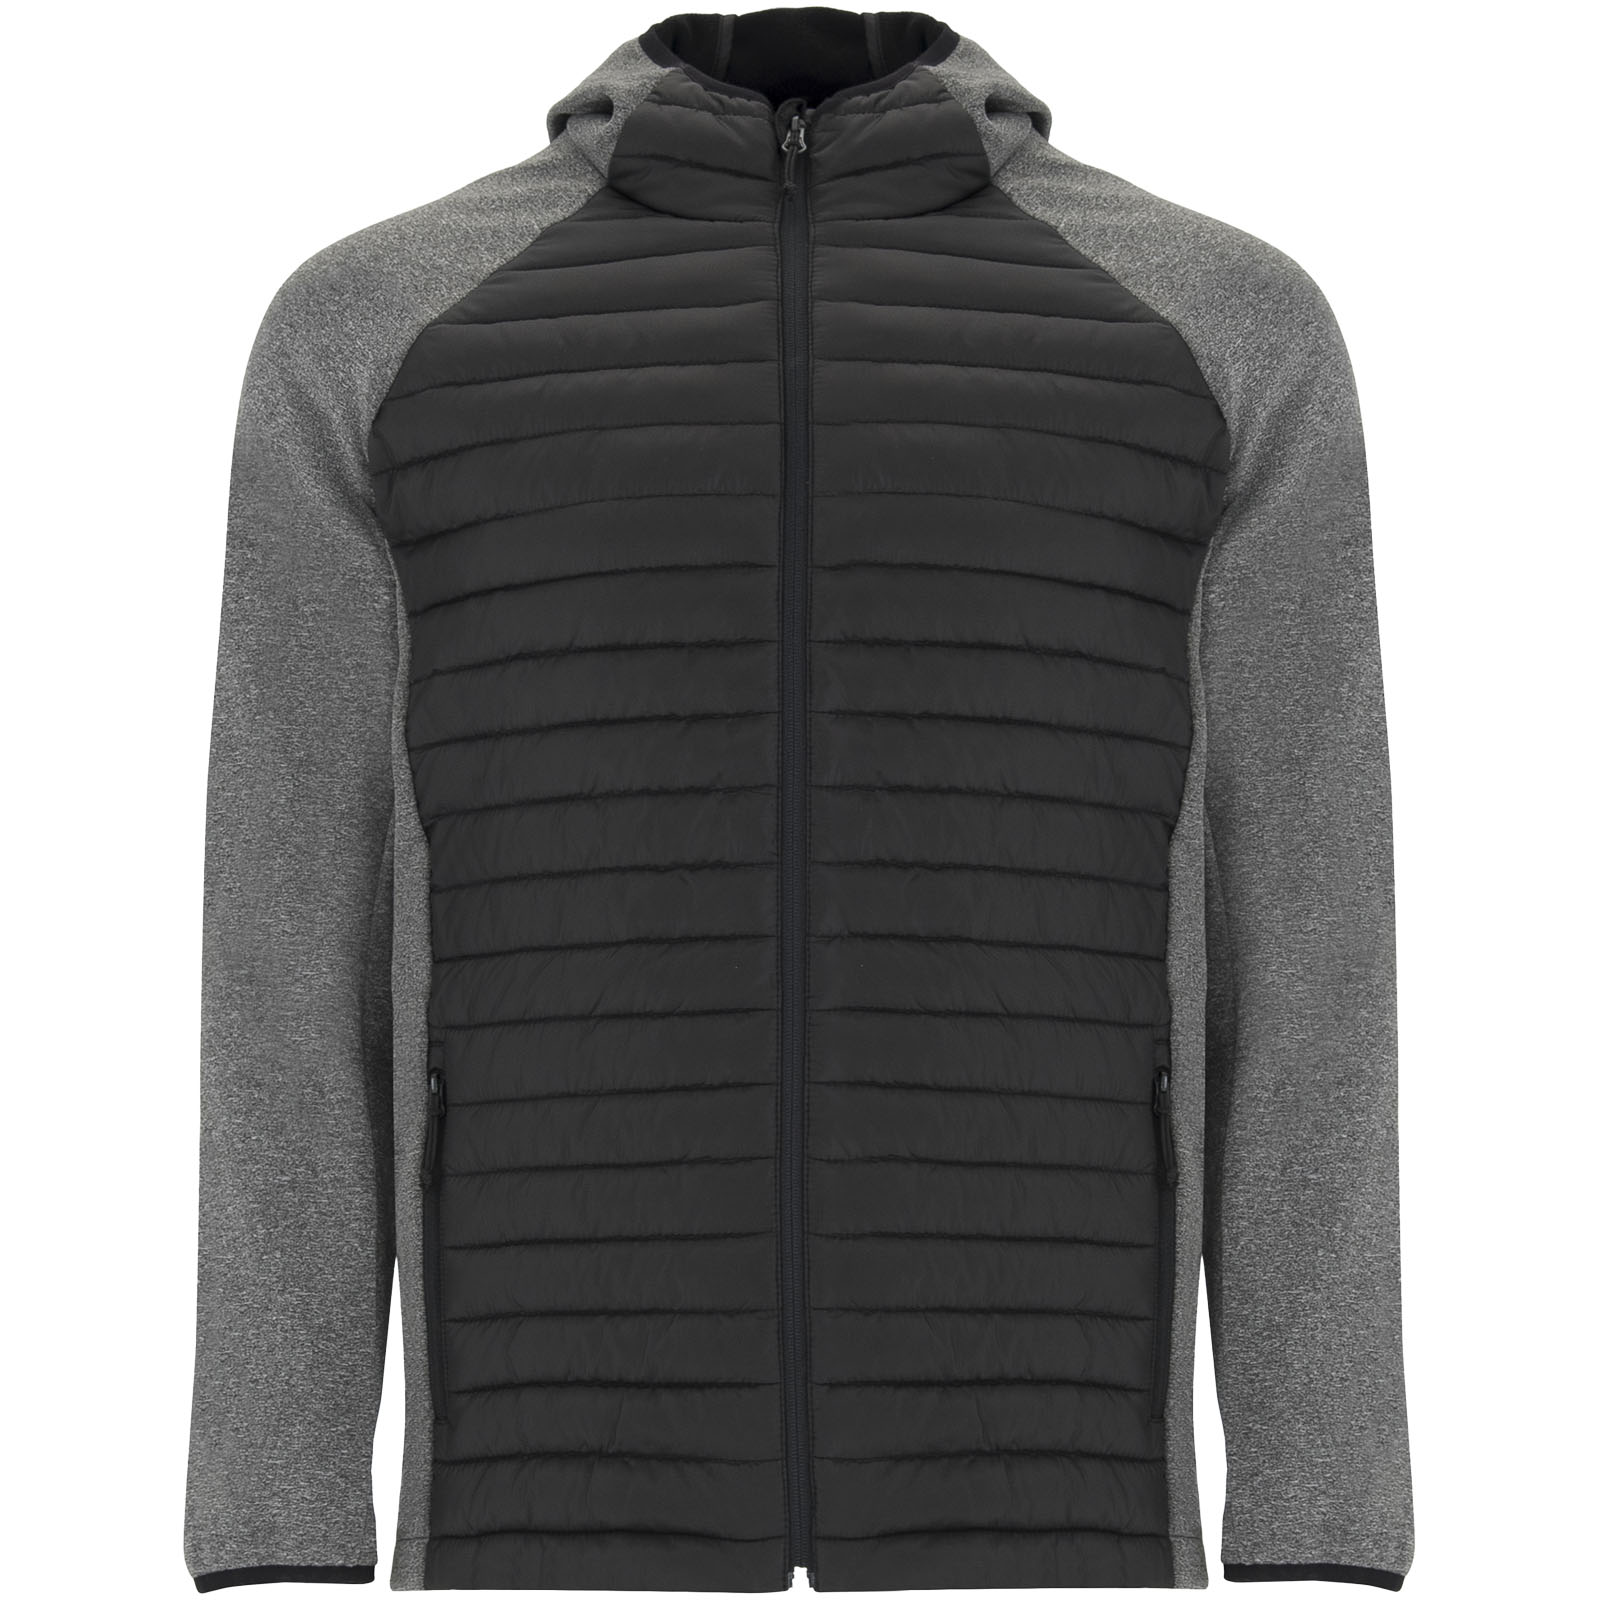 Clothing - Minsk unisex hybrid insulated jacket